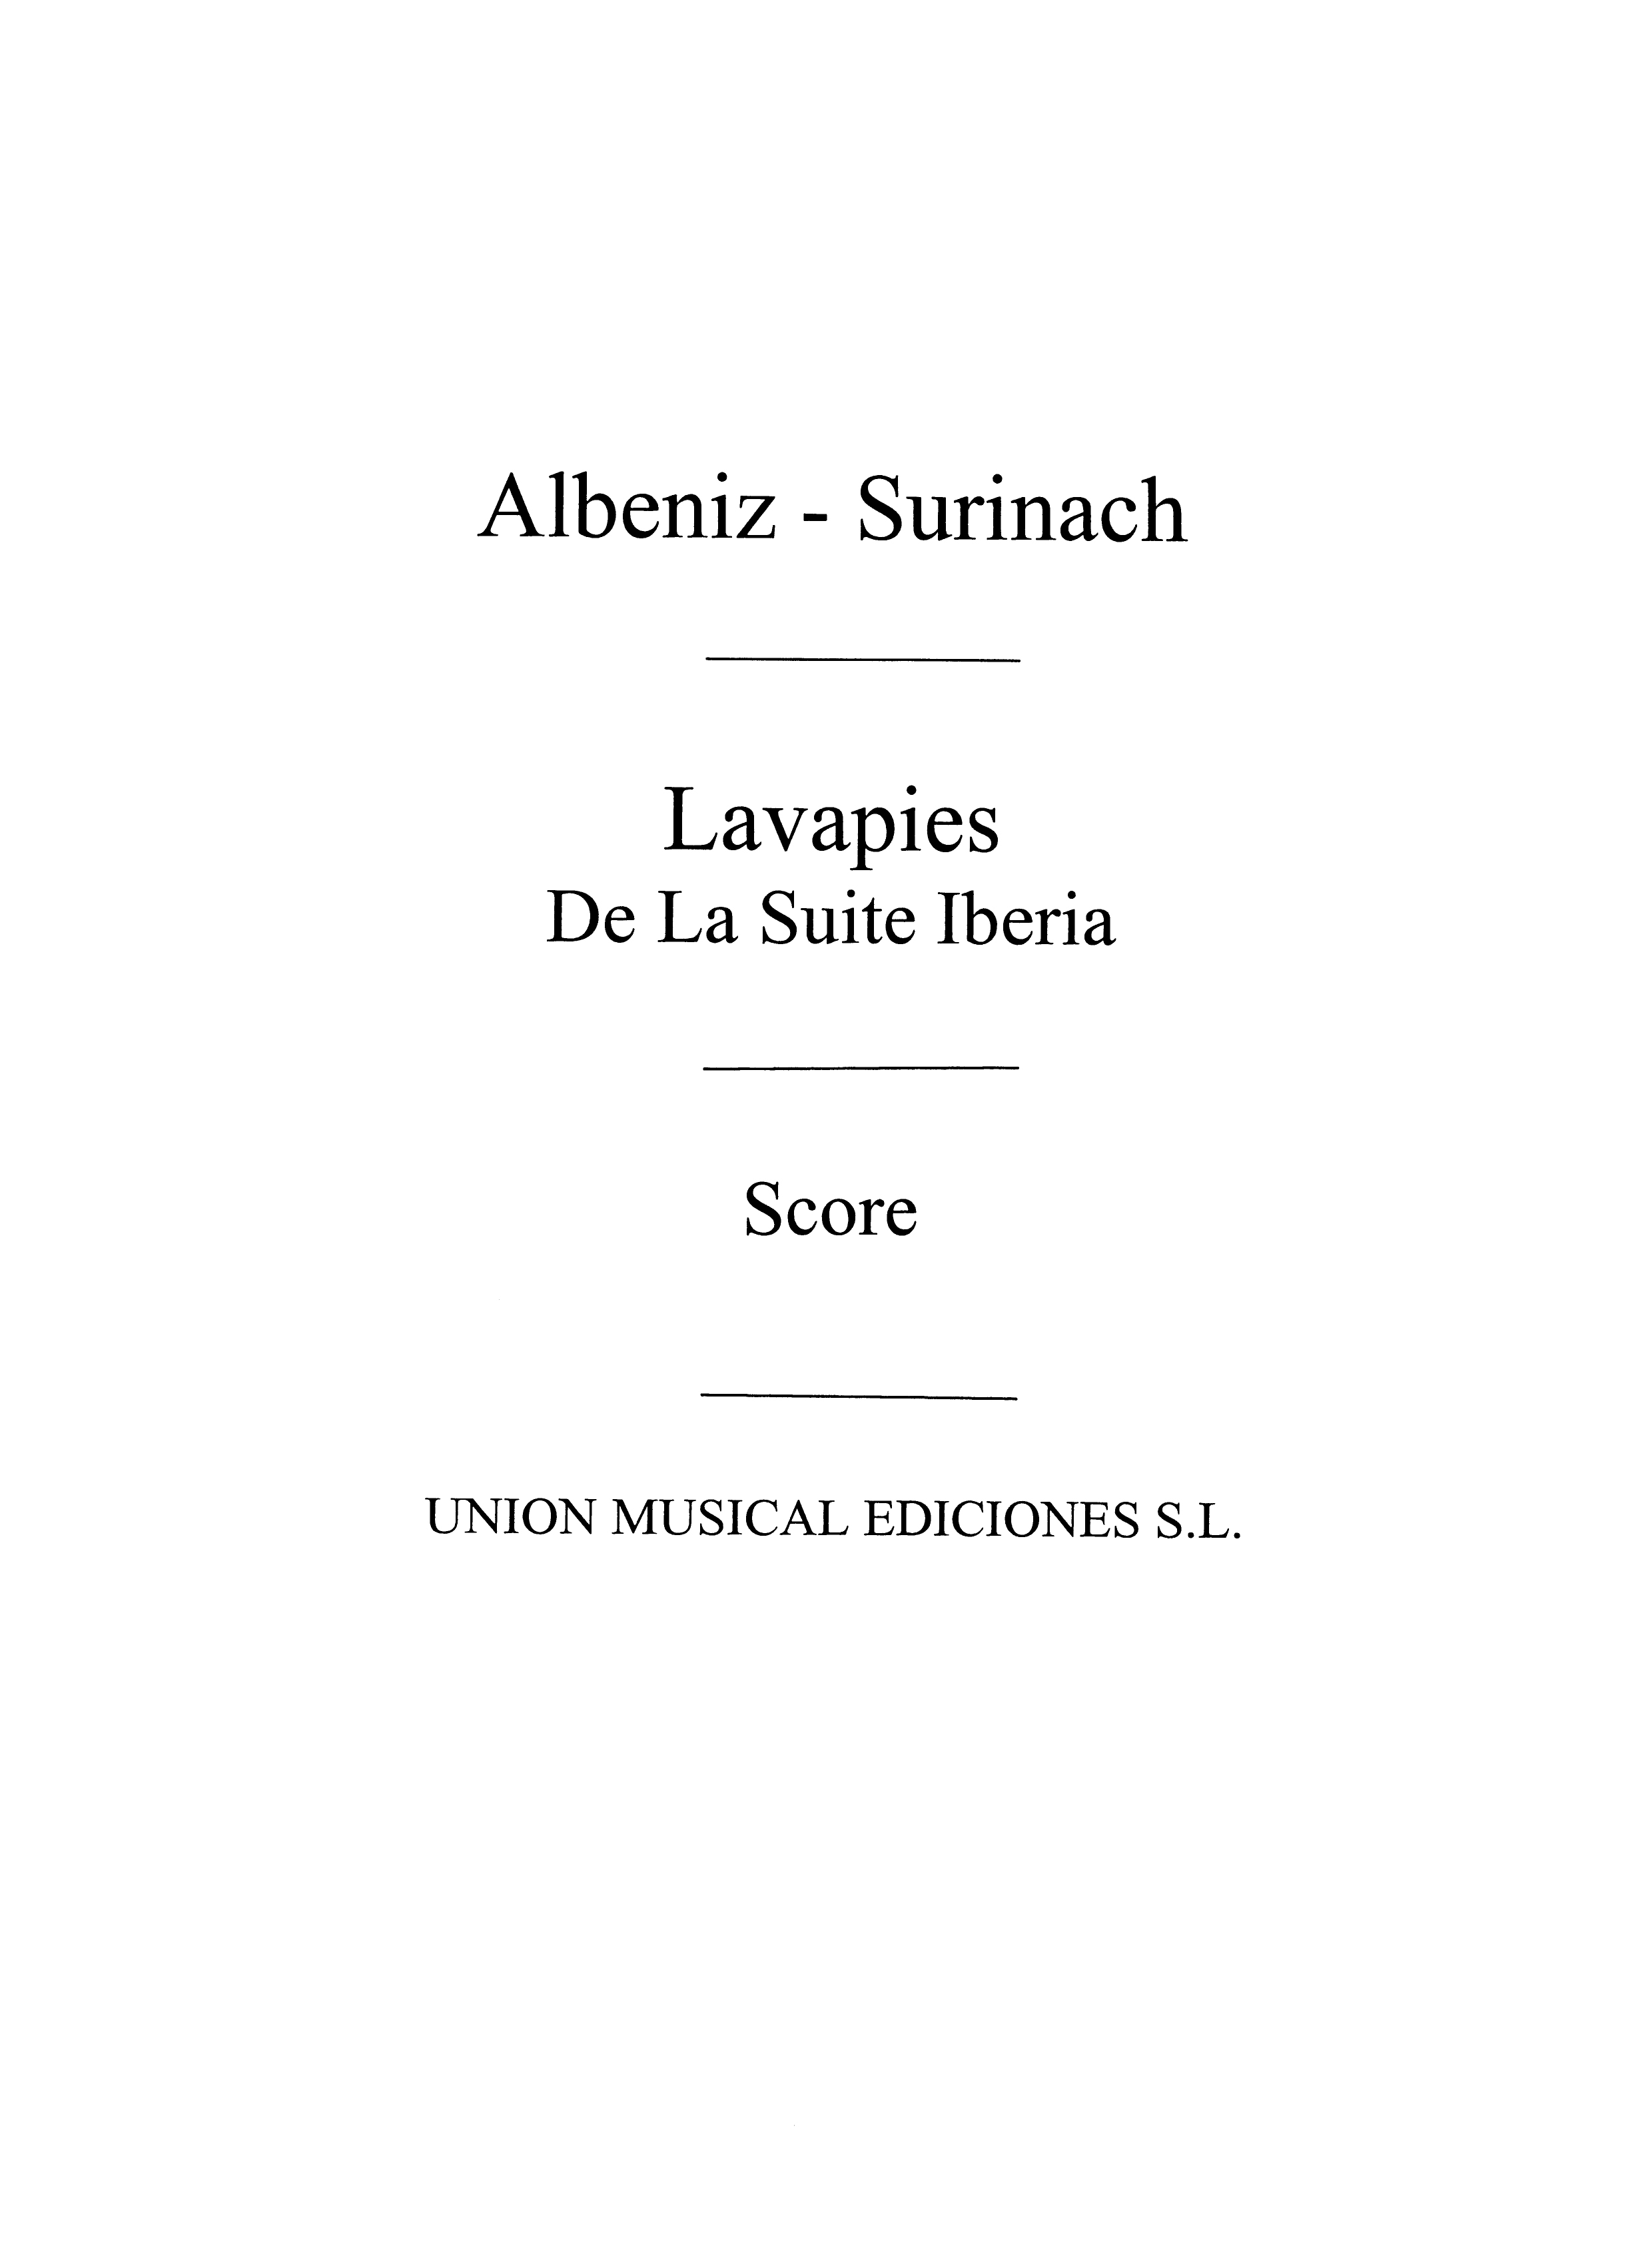 Albeniz: Lavapies from Iberia (Surinach)